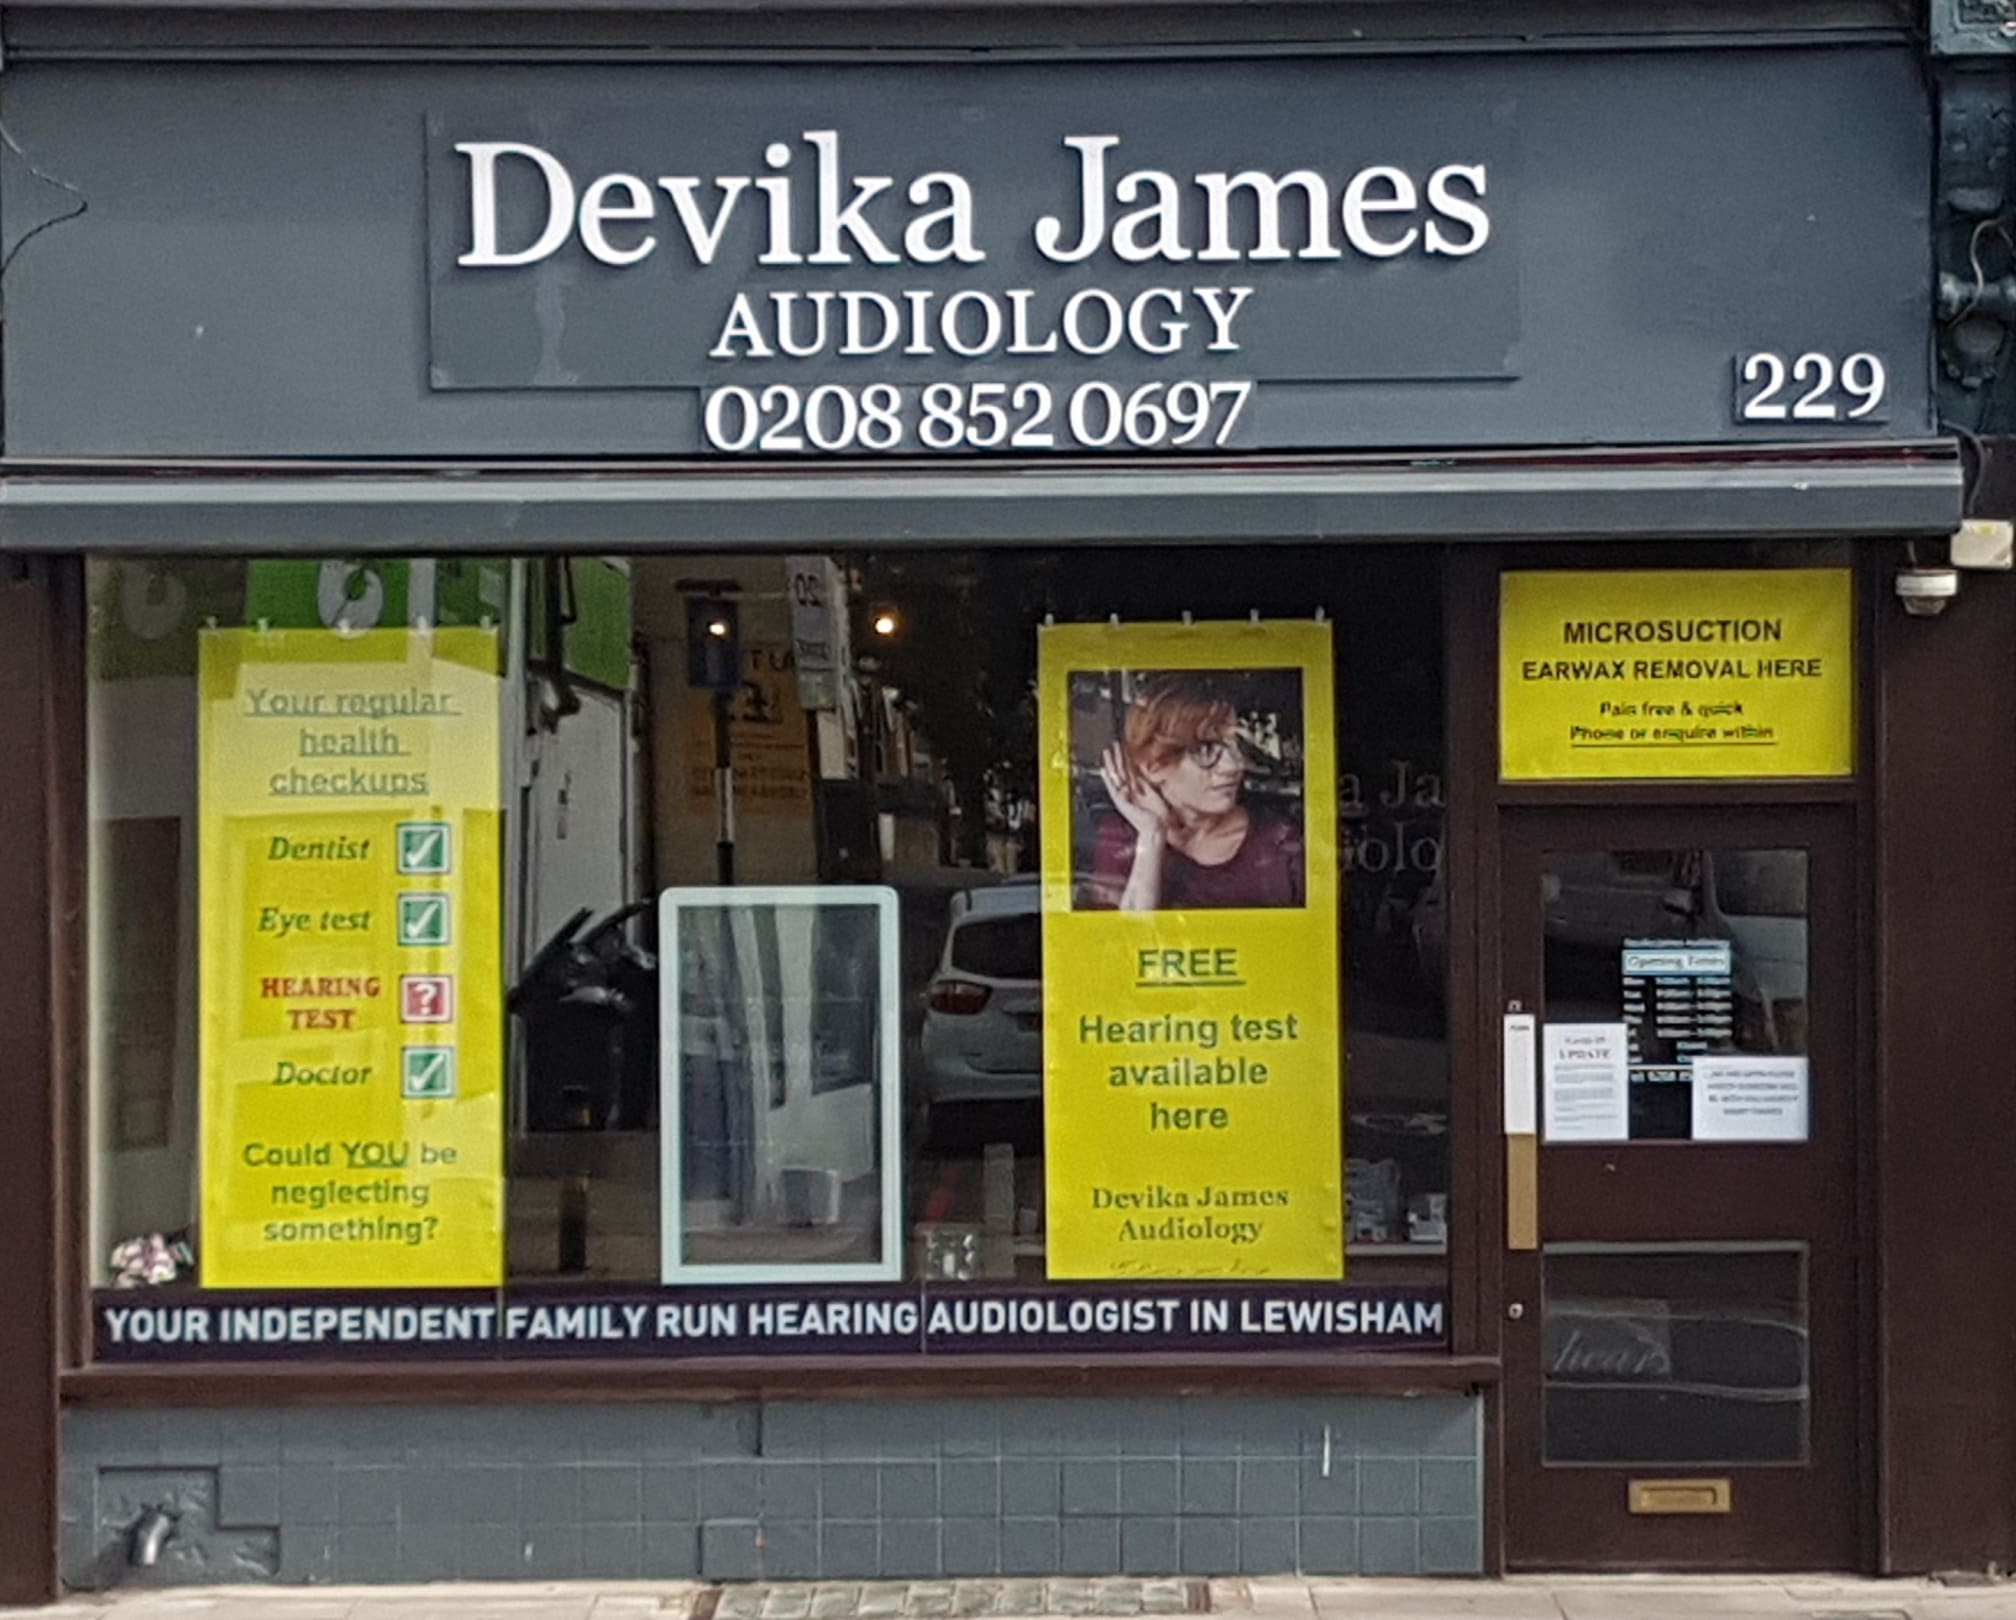 Devika James Audiology Ltd London 020 8852 0697